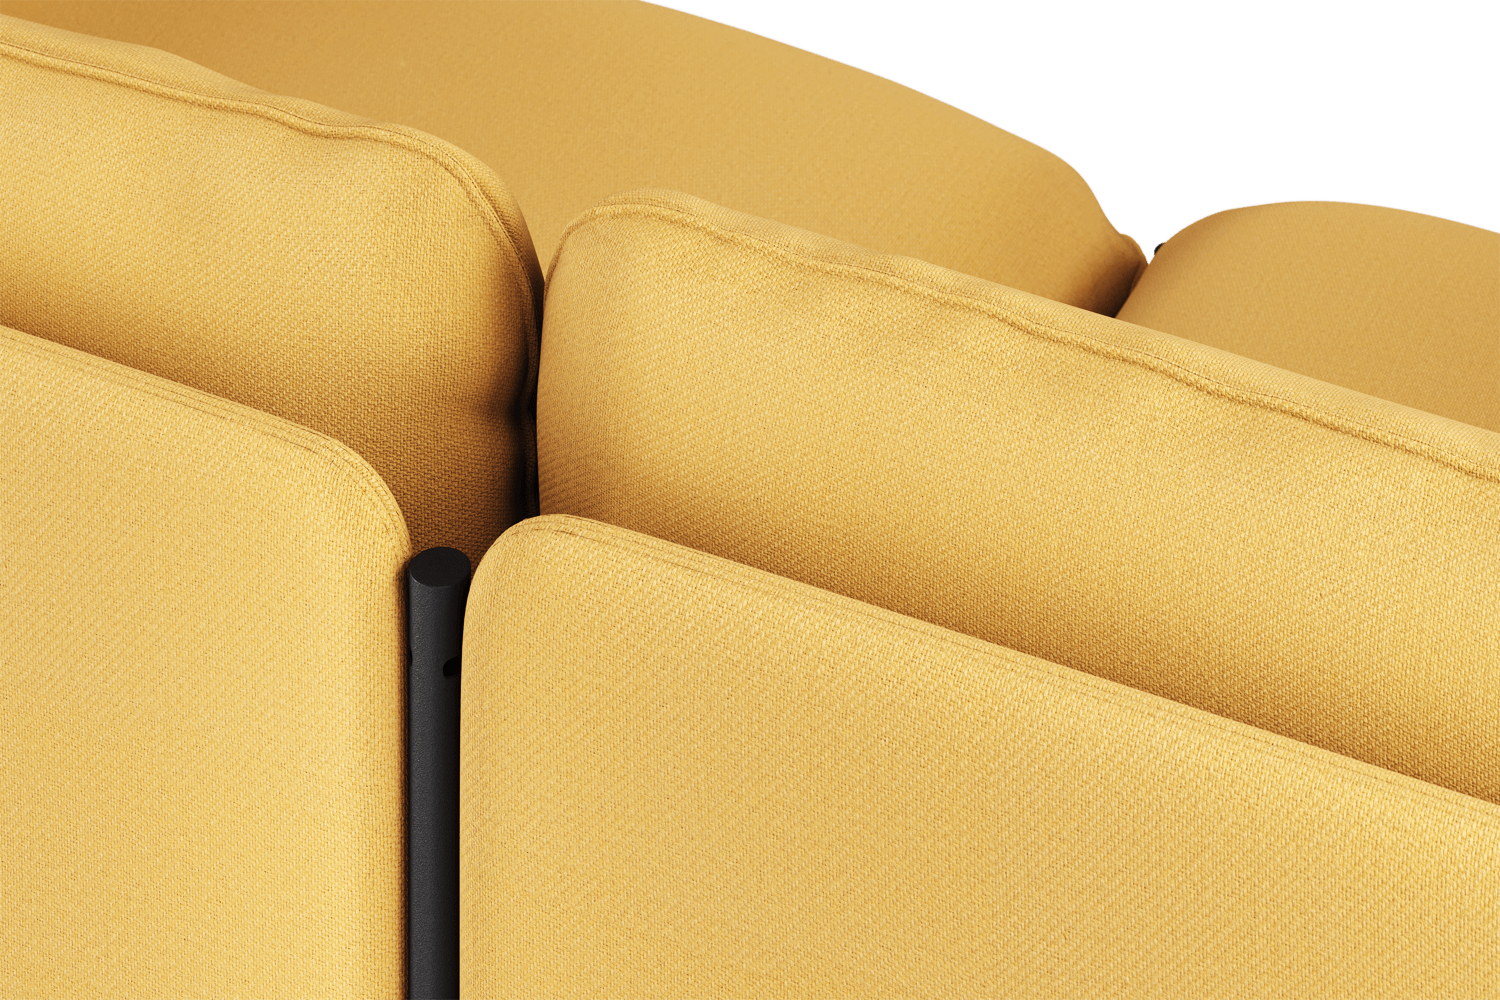 Toom Modular Sofa 4-Sitzer Konfiguration 1b in Yellow Ochre präsentiert im Onlineshop von KAQTU Design AG. Ecksofa links ist von Noo.ma